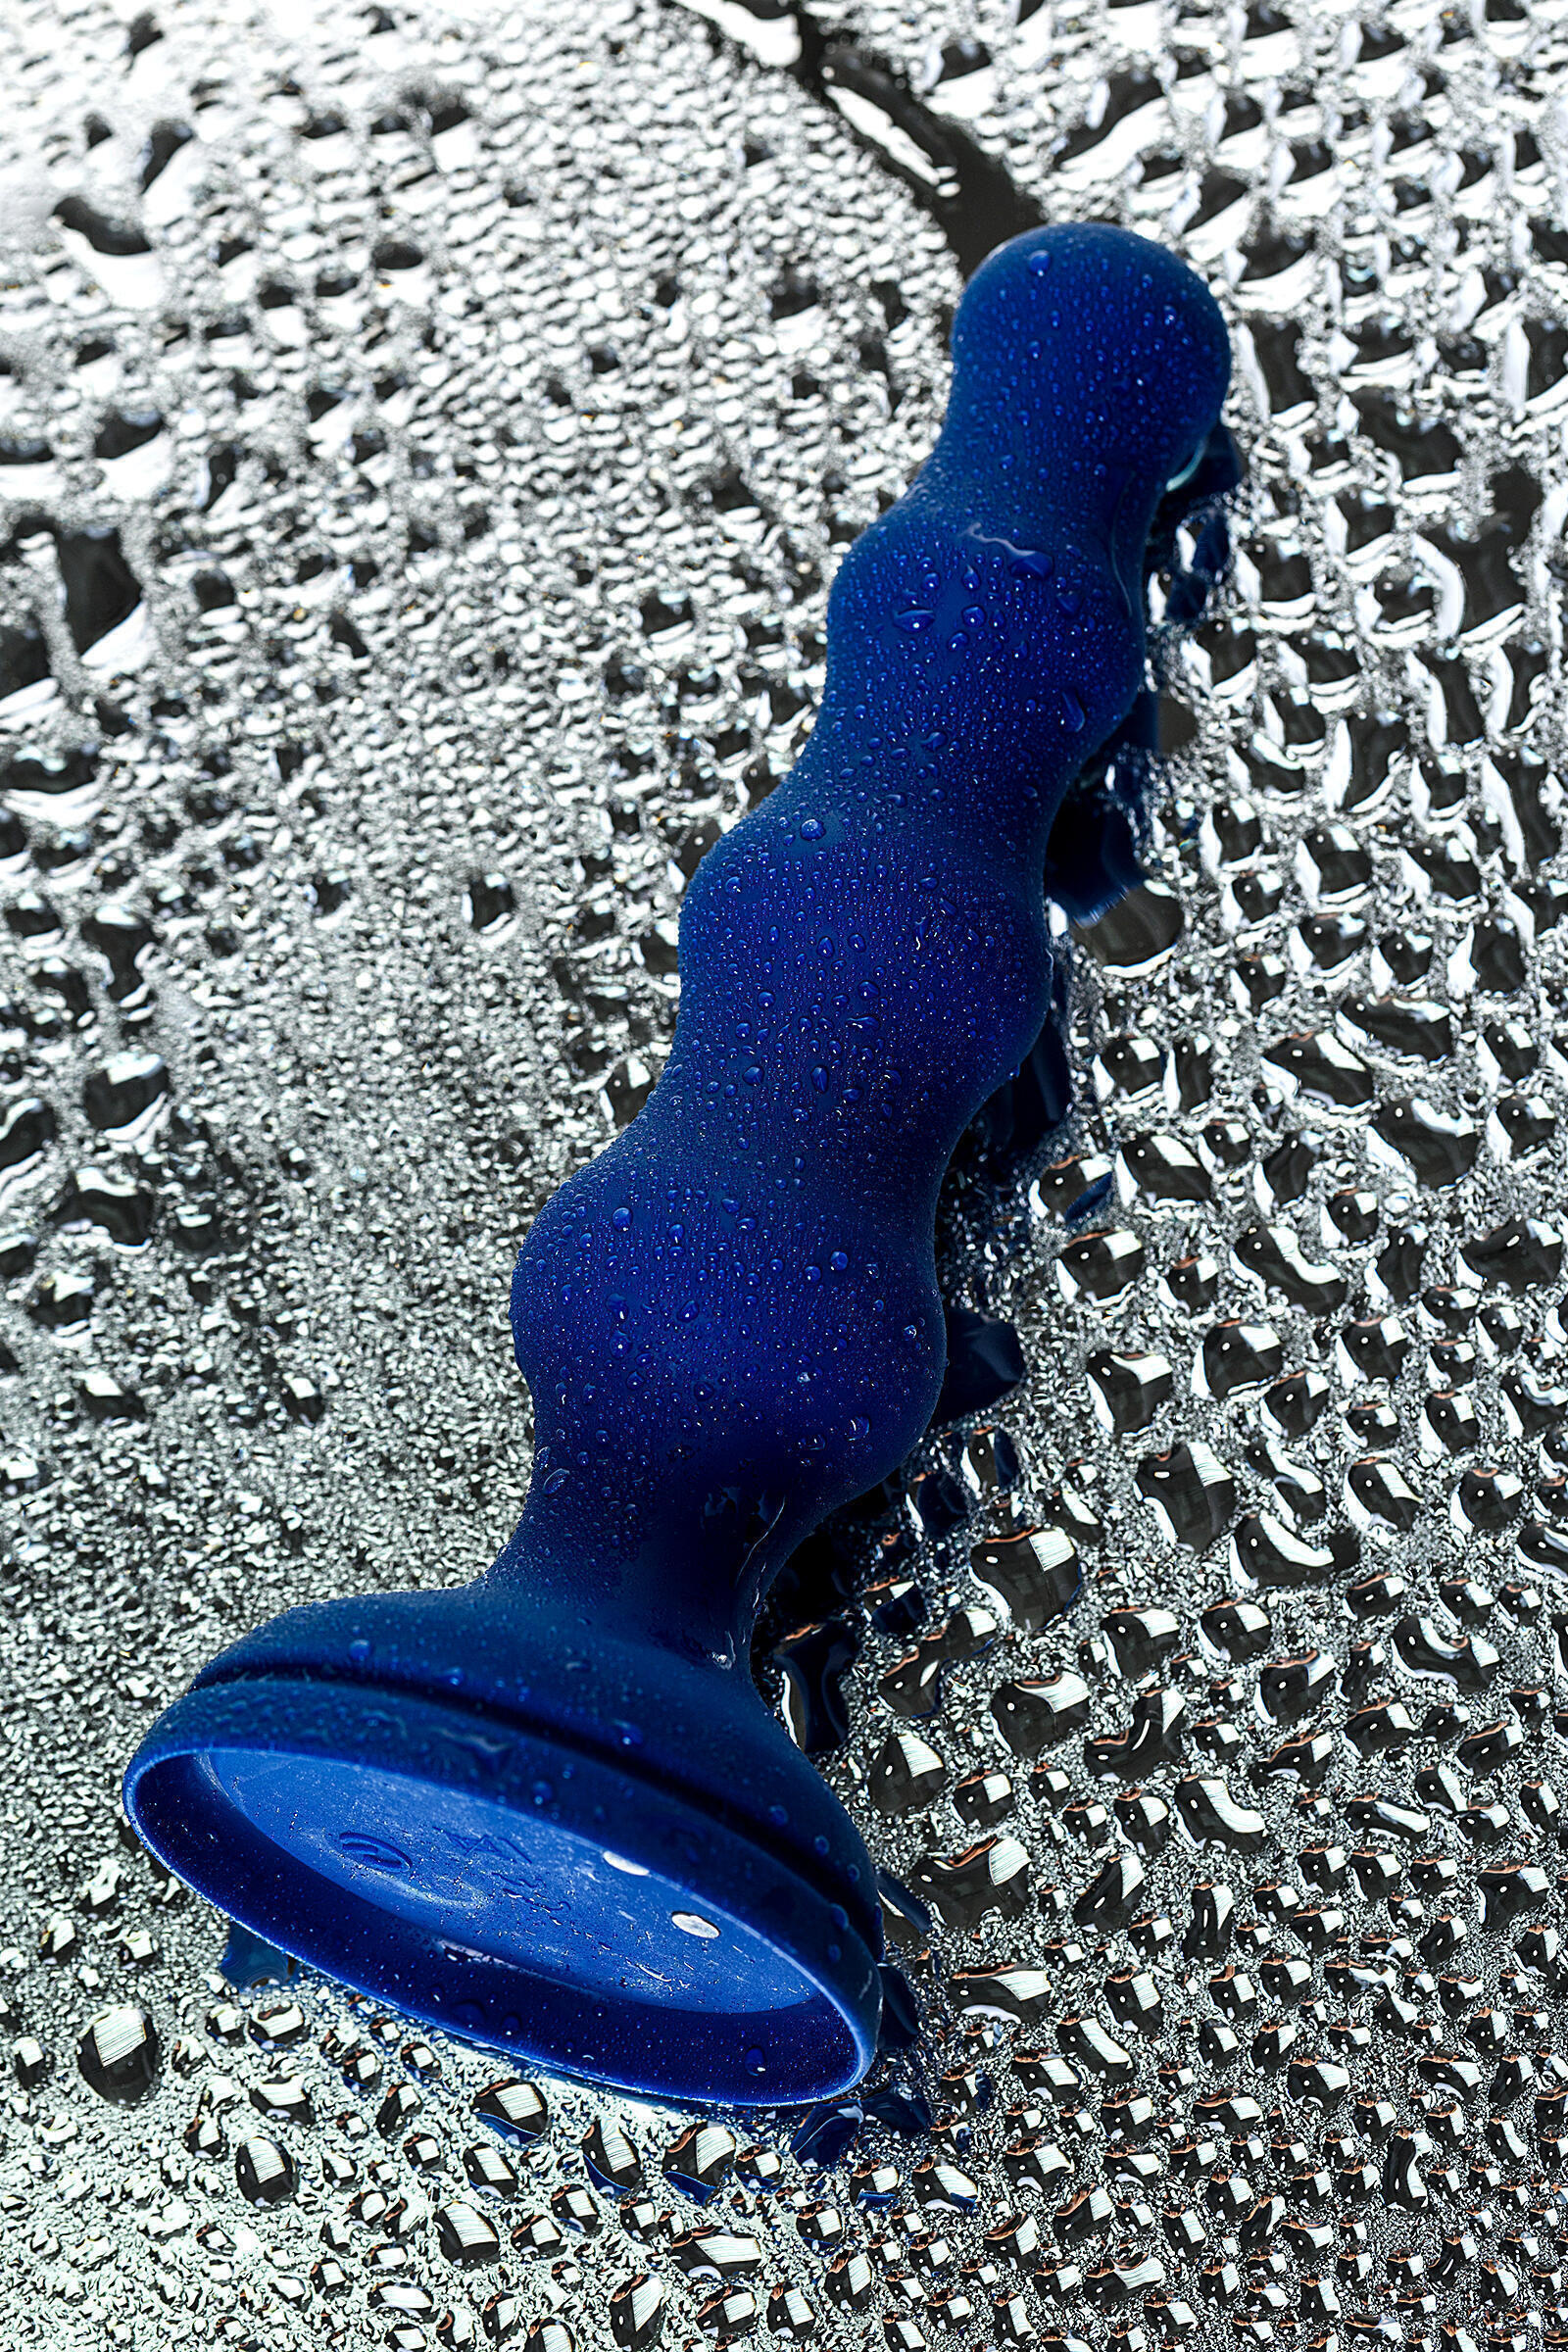 Анальная вибропробка-елочка Toyfa O'Play Wave с пультом ДУ, синий